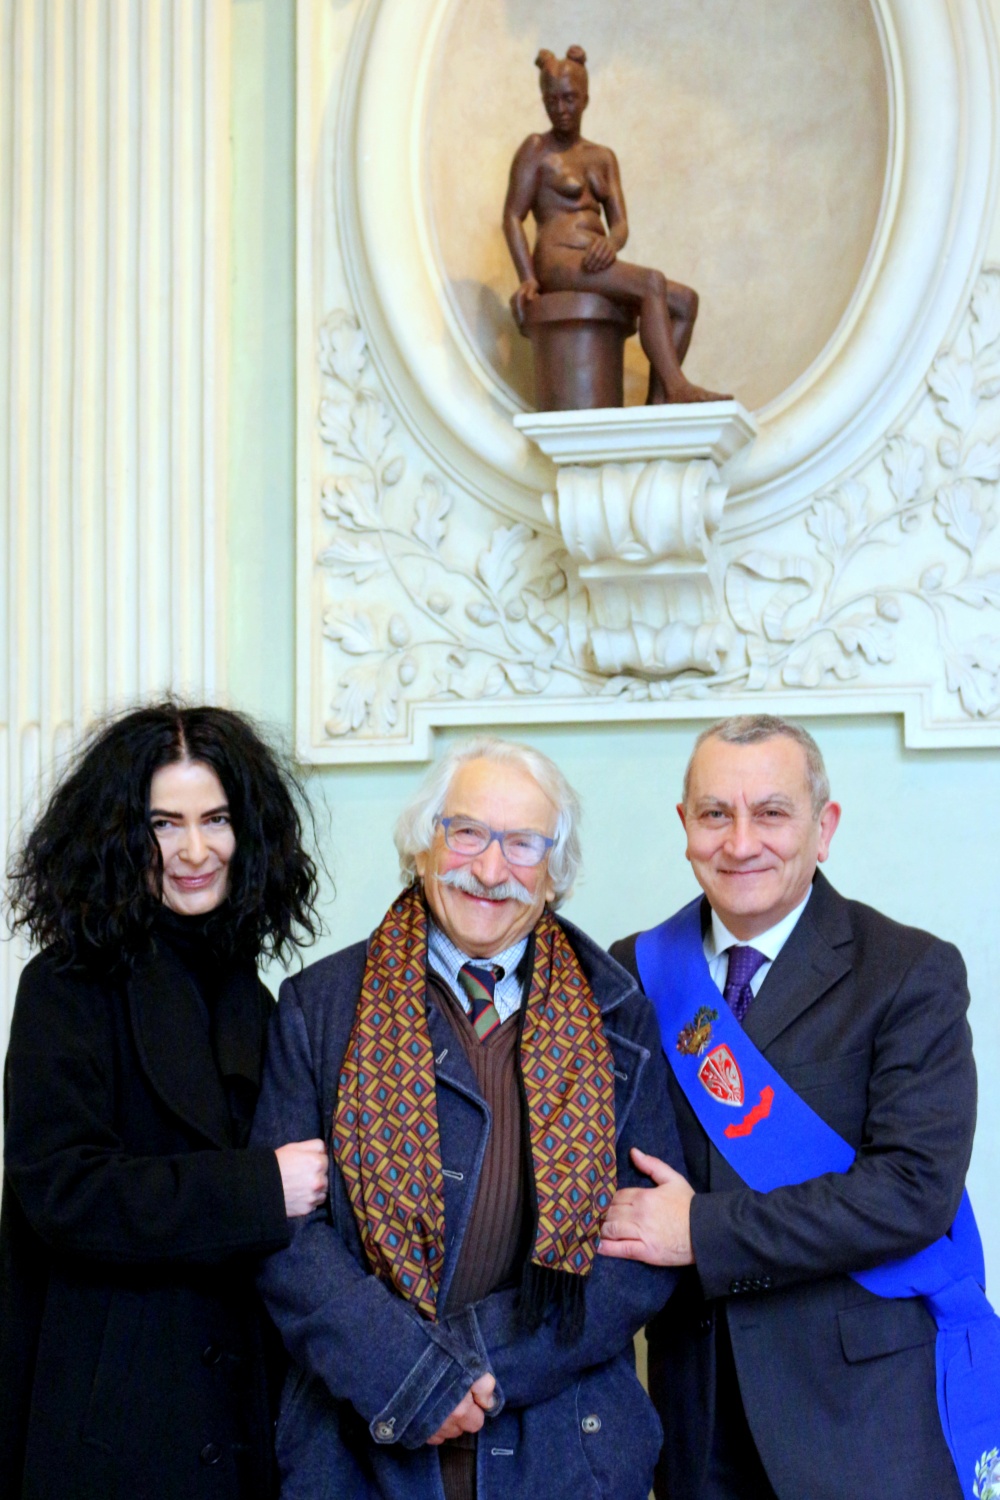 Helga Vockenhuber, Giuseppe Cordoni e Andrea Ceccarelli. In alto la statua donata alla Citt Metropolitana di Firenze (Foto di Antonello Serino, redazione di Met)